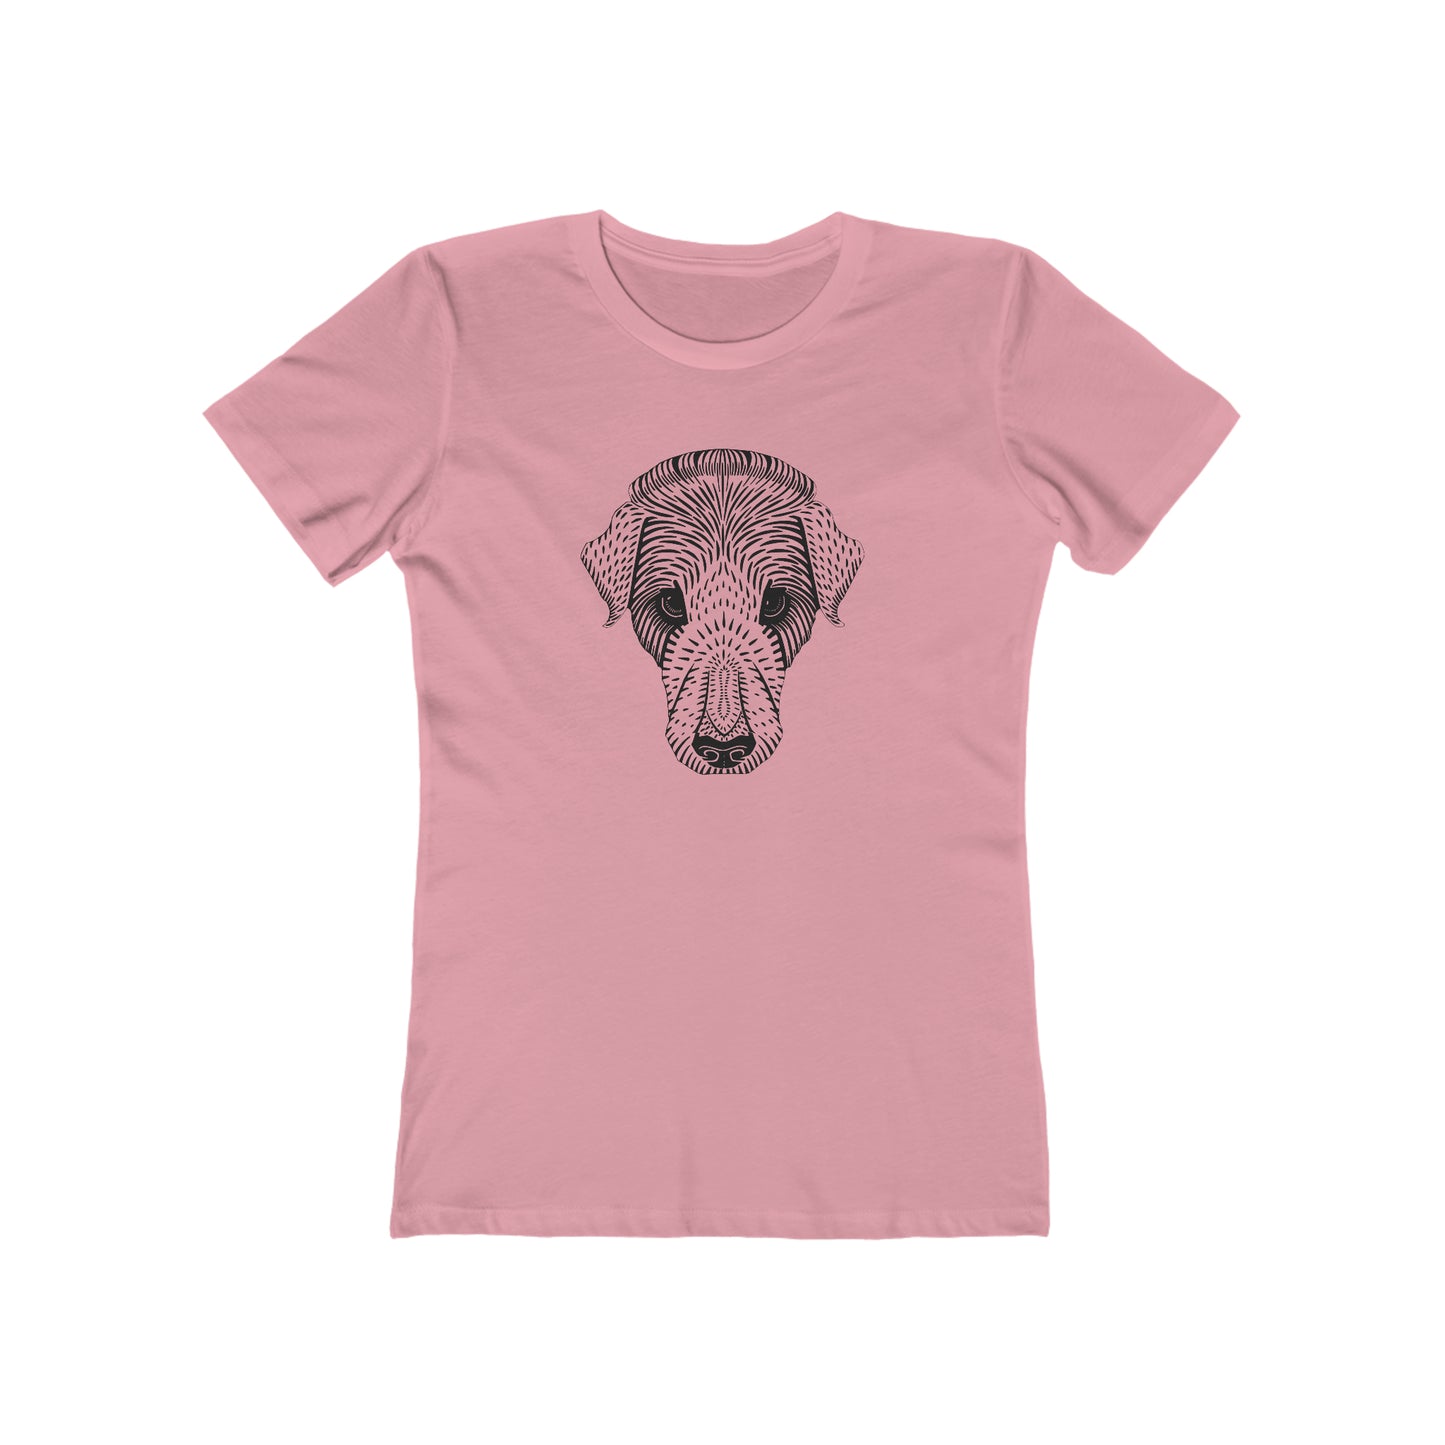 Dog Best Friend - Women's T-Shirt